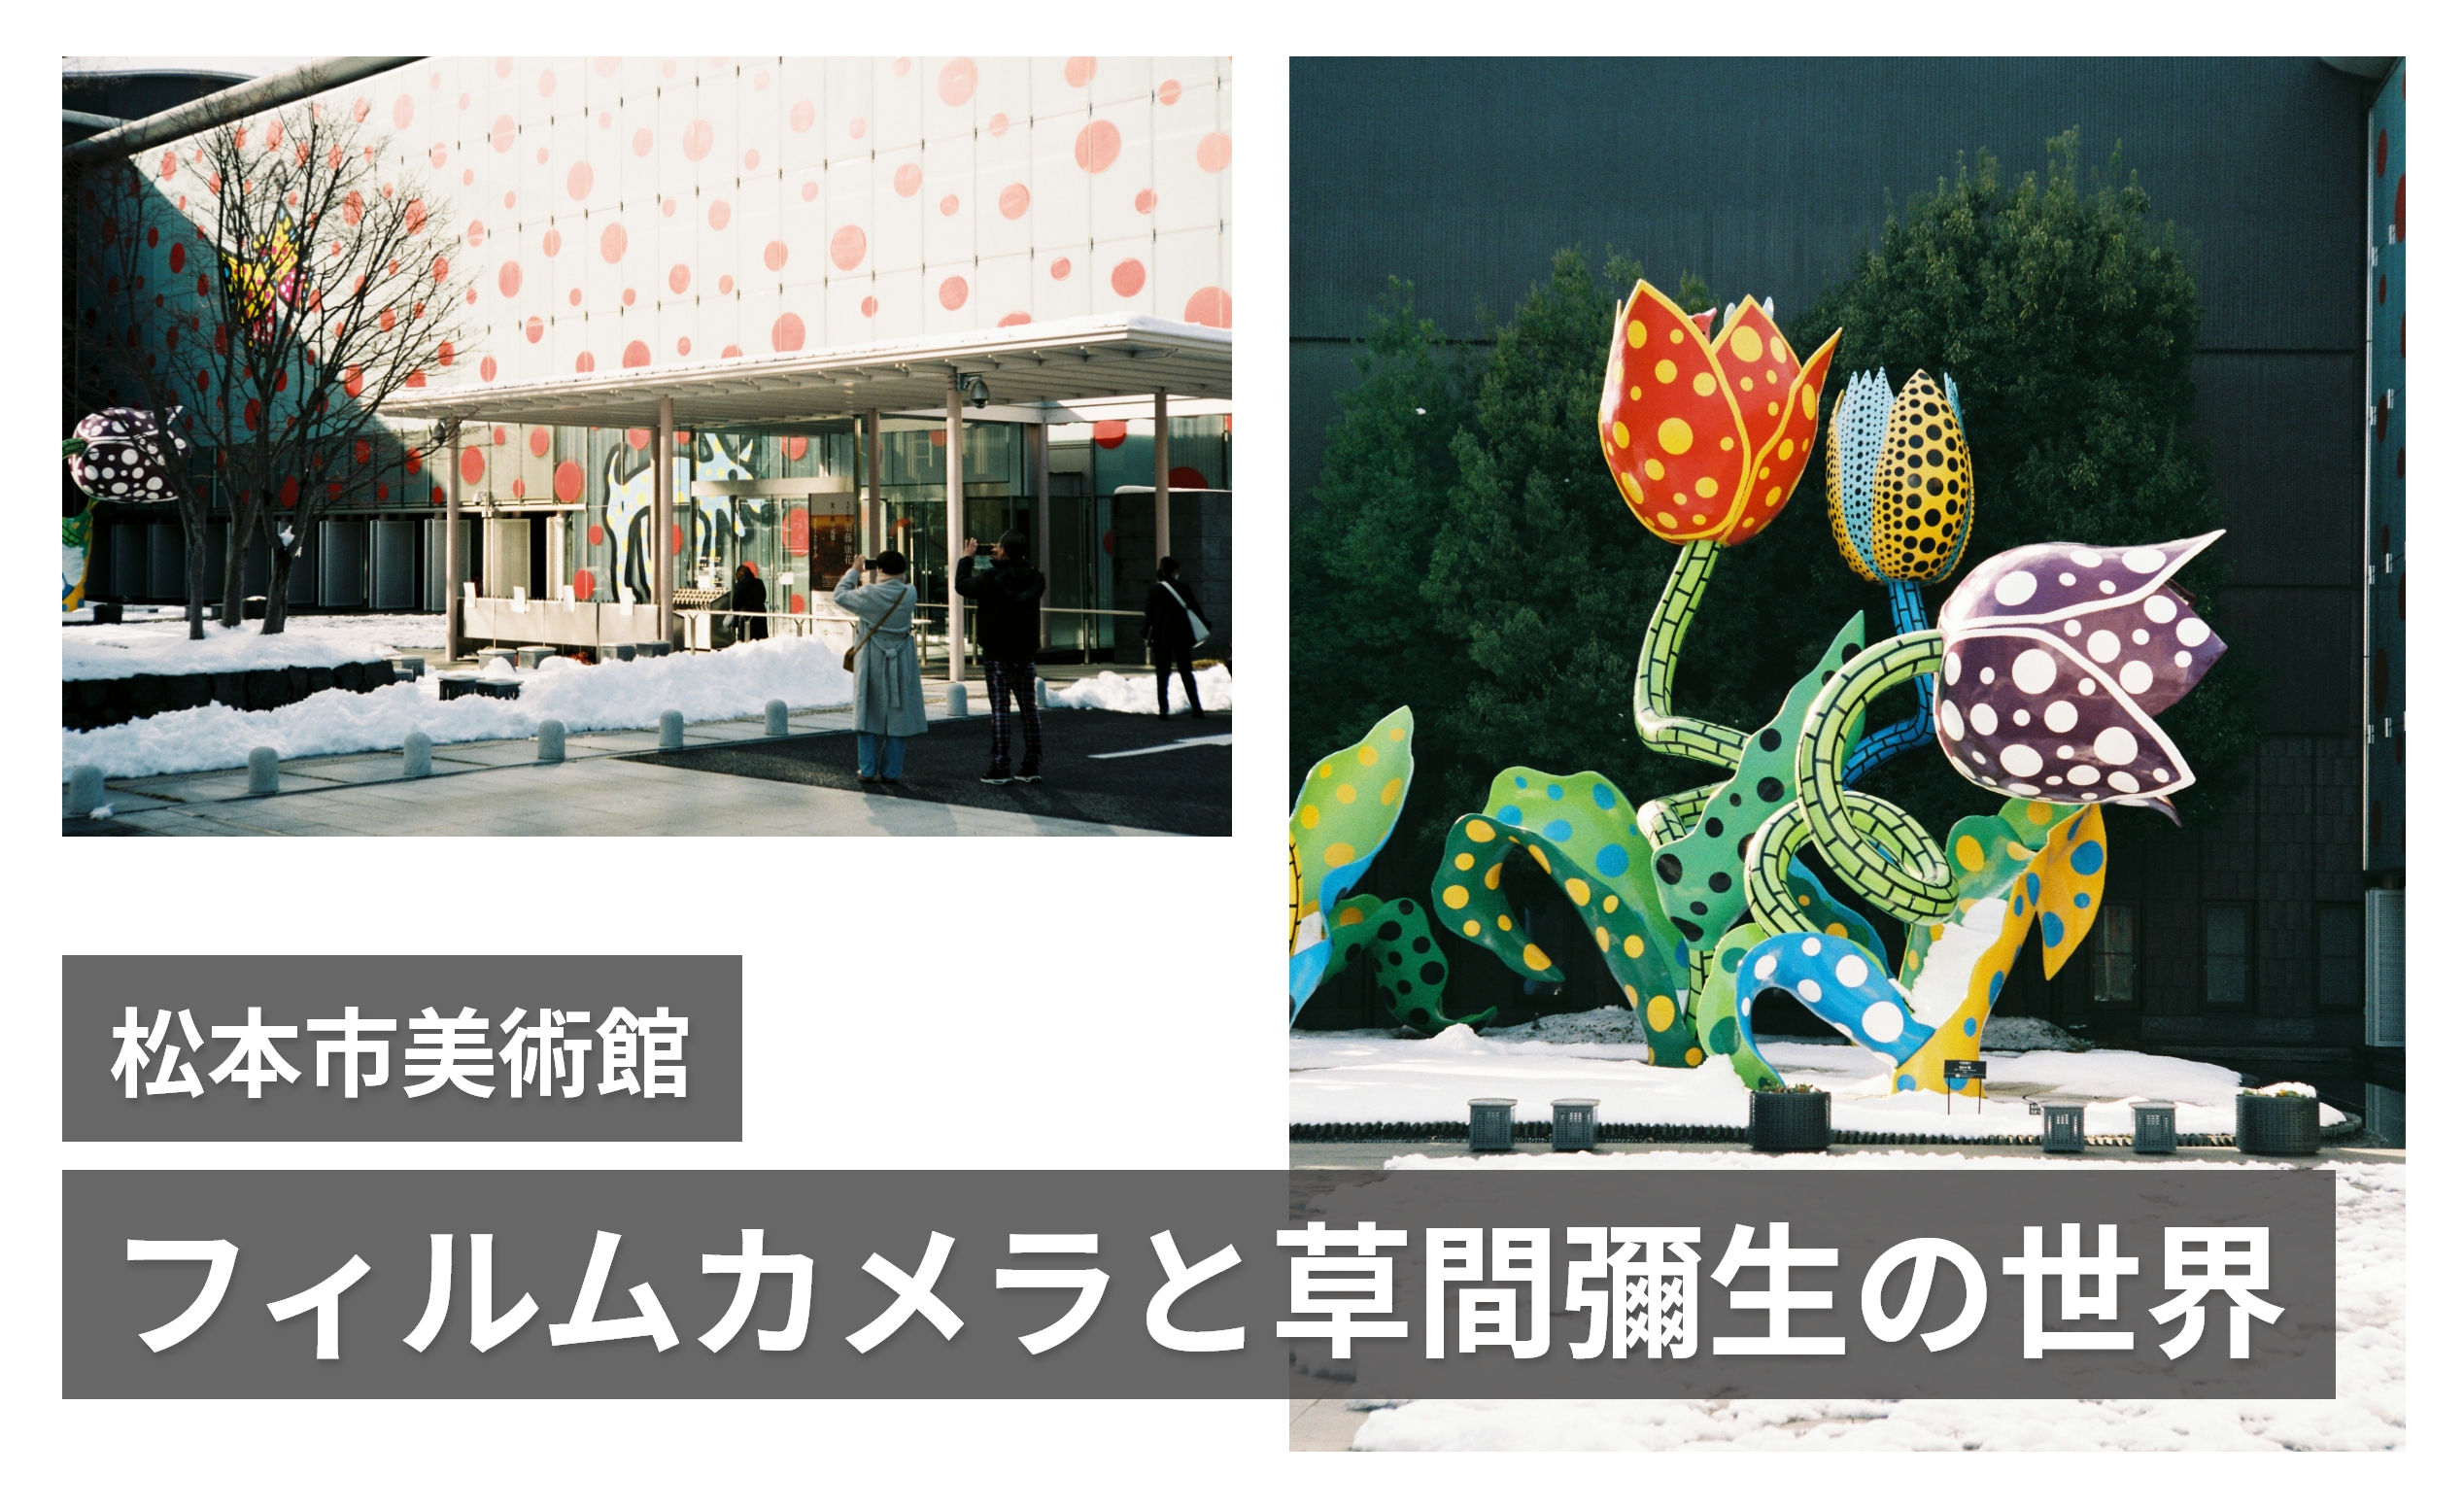 【ニコンS3】フィルムカメラを持って草間彌生ワールド全開の松本市美術館に行ってきた